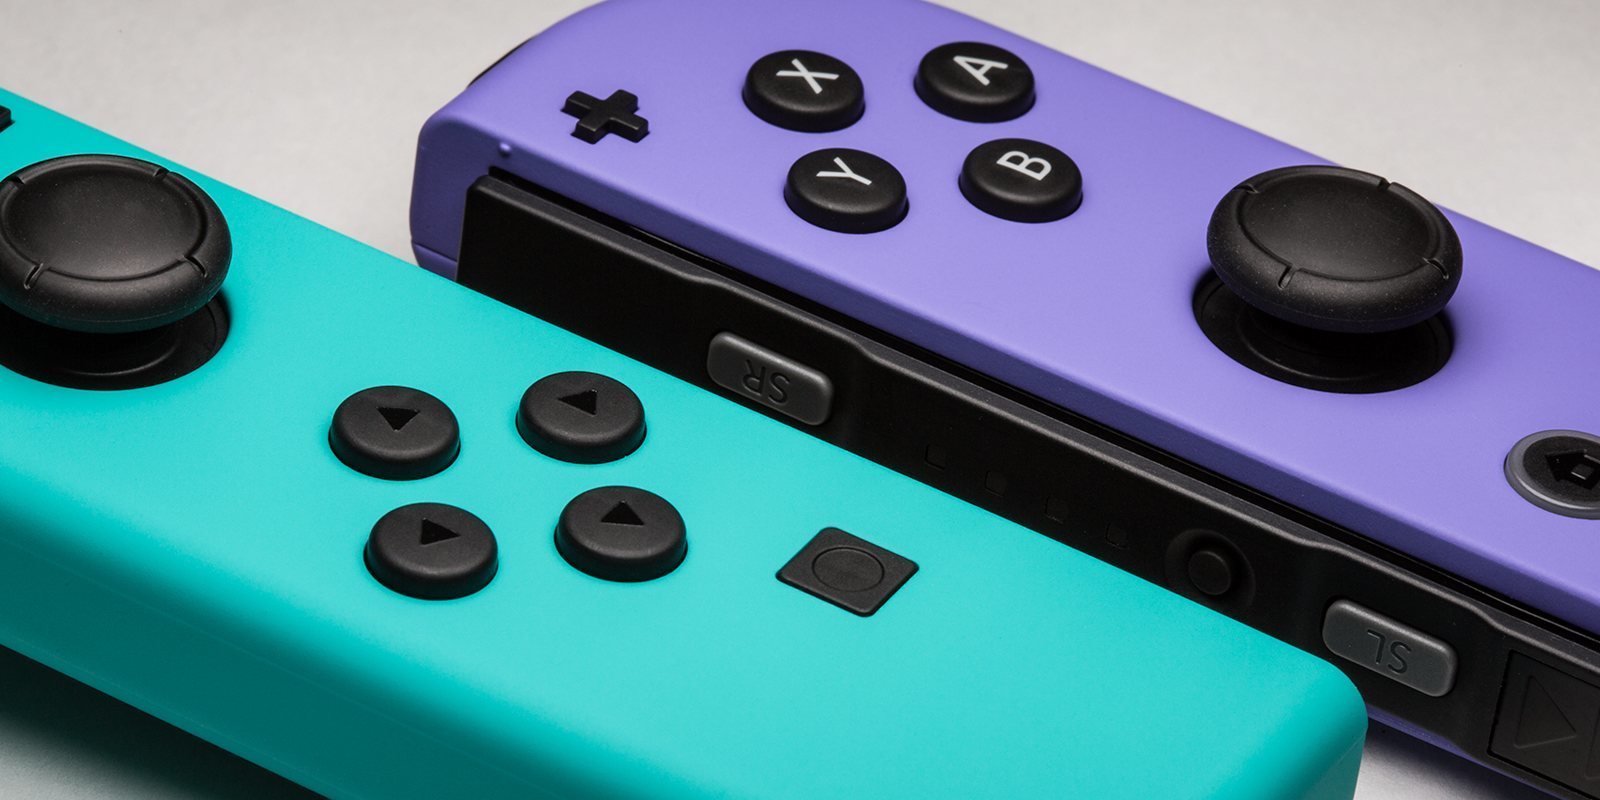 Una revista francesa nombra a Nintendo Switch "producto más frágil de 2019"